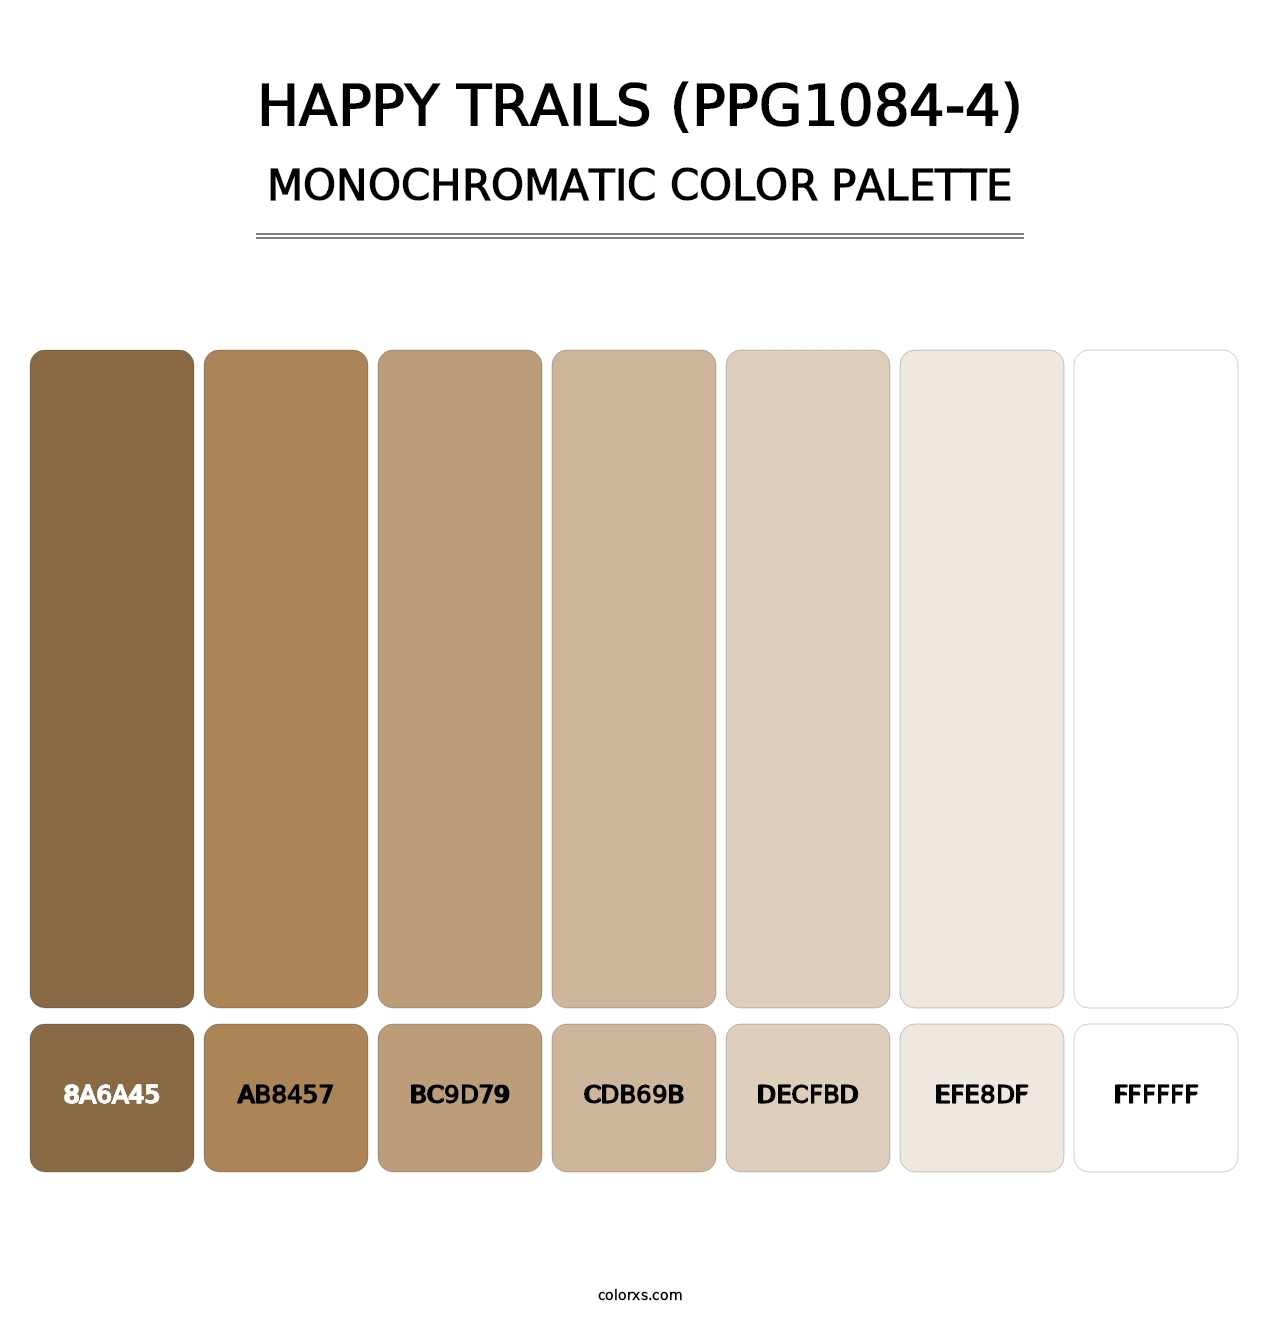 Happy Trails (PPG1084-4) - Monochromatic Color Palette